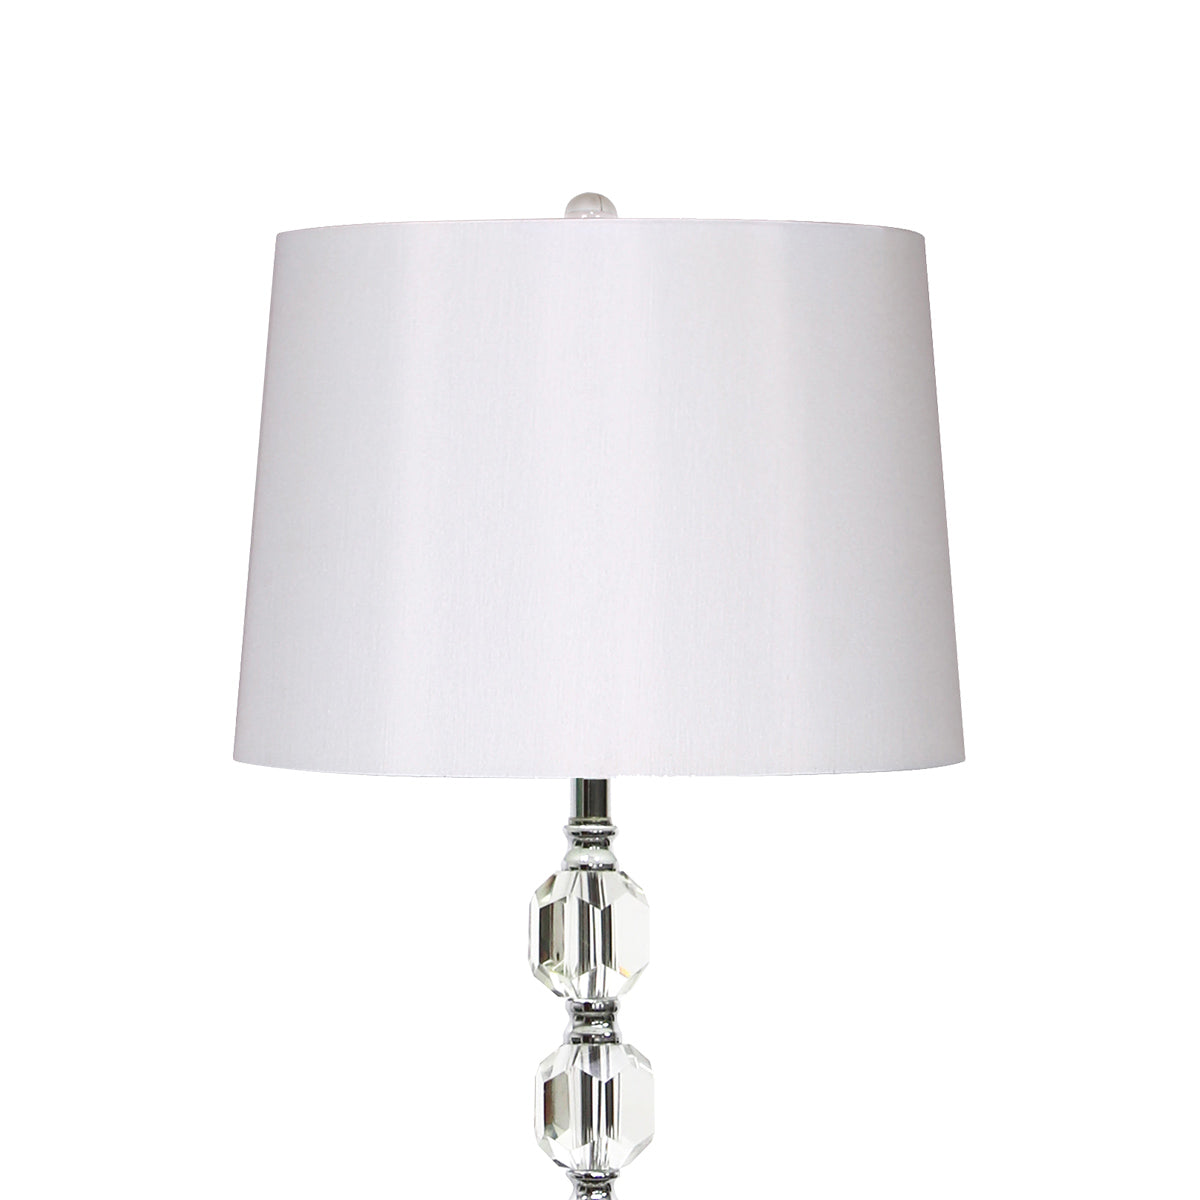 Essex 60" Floor Lamp